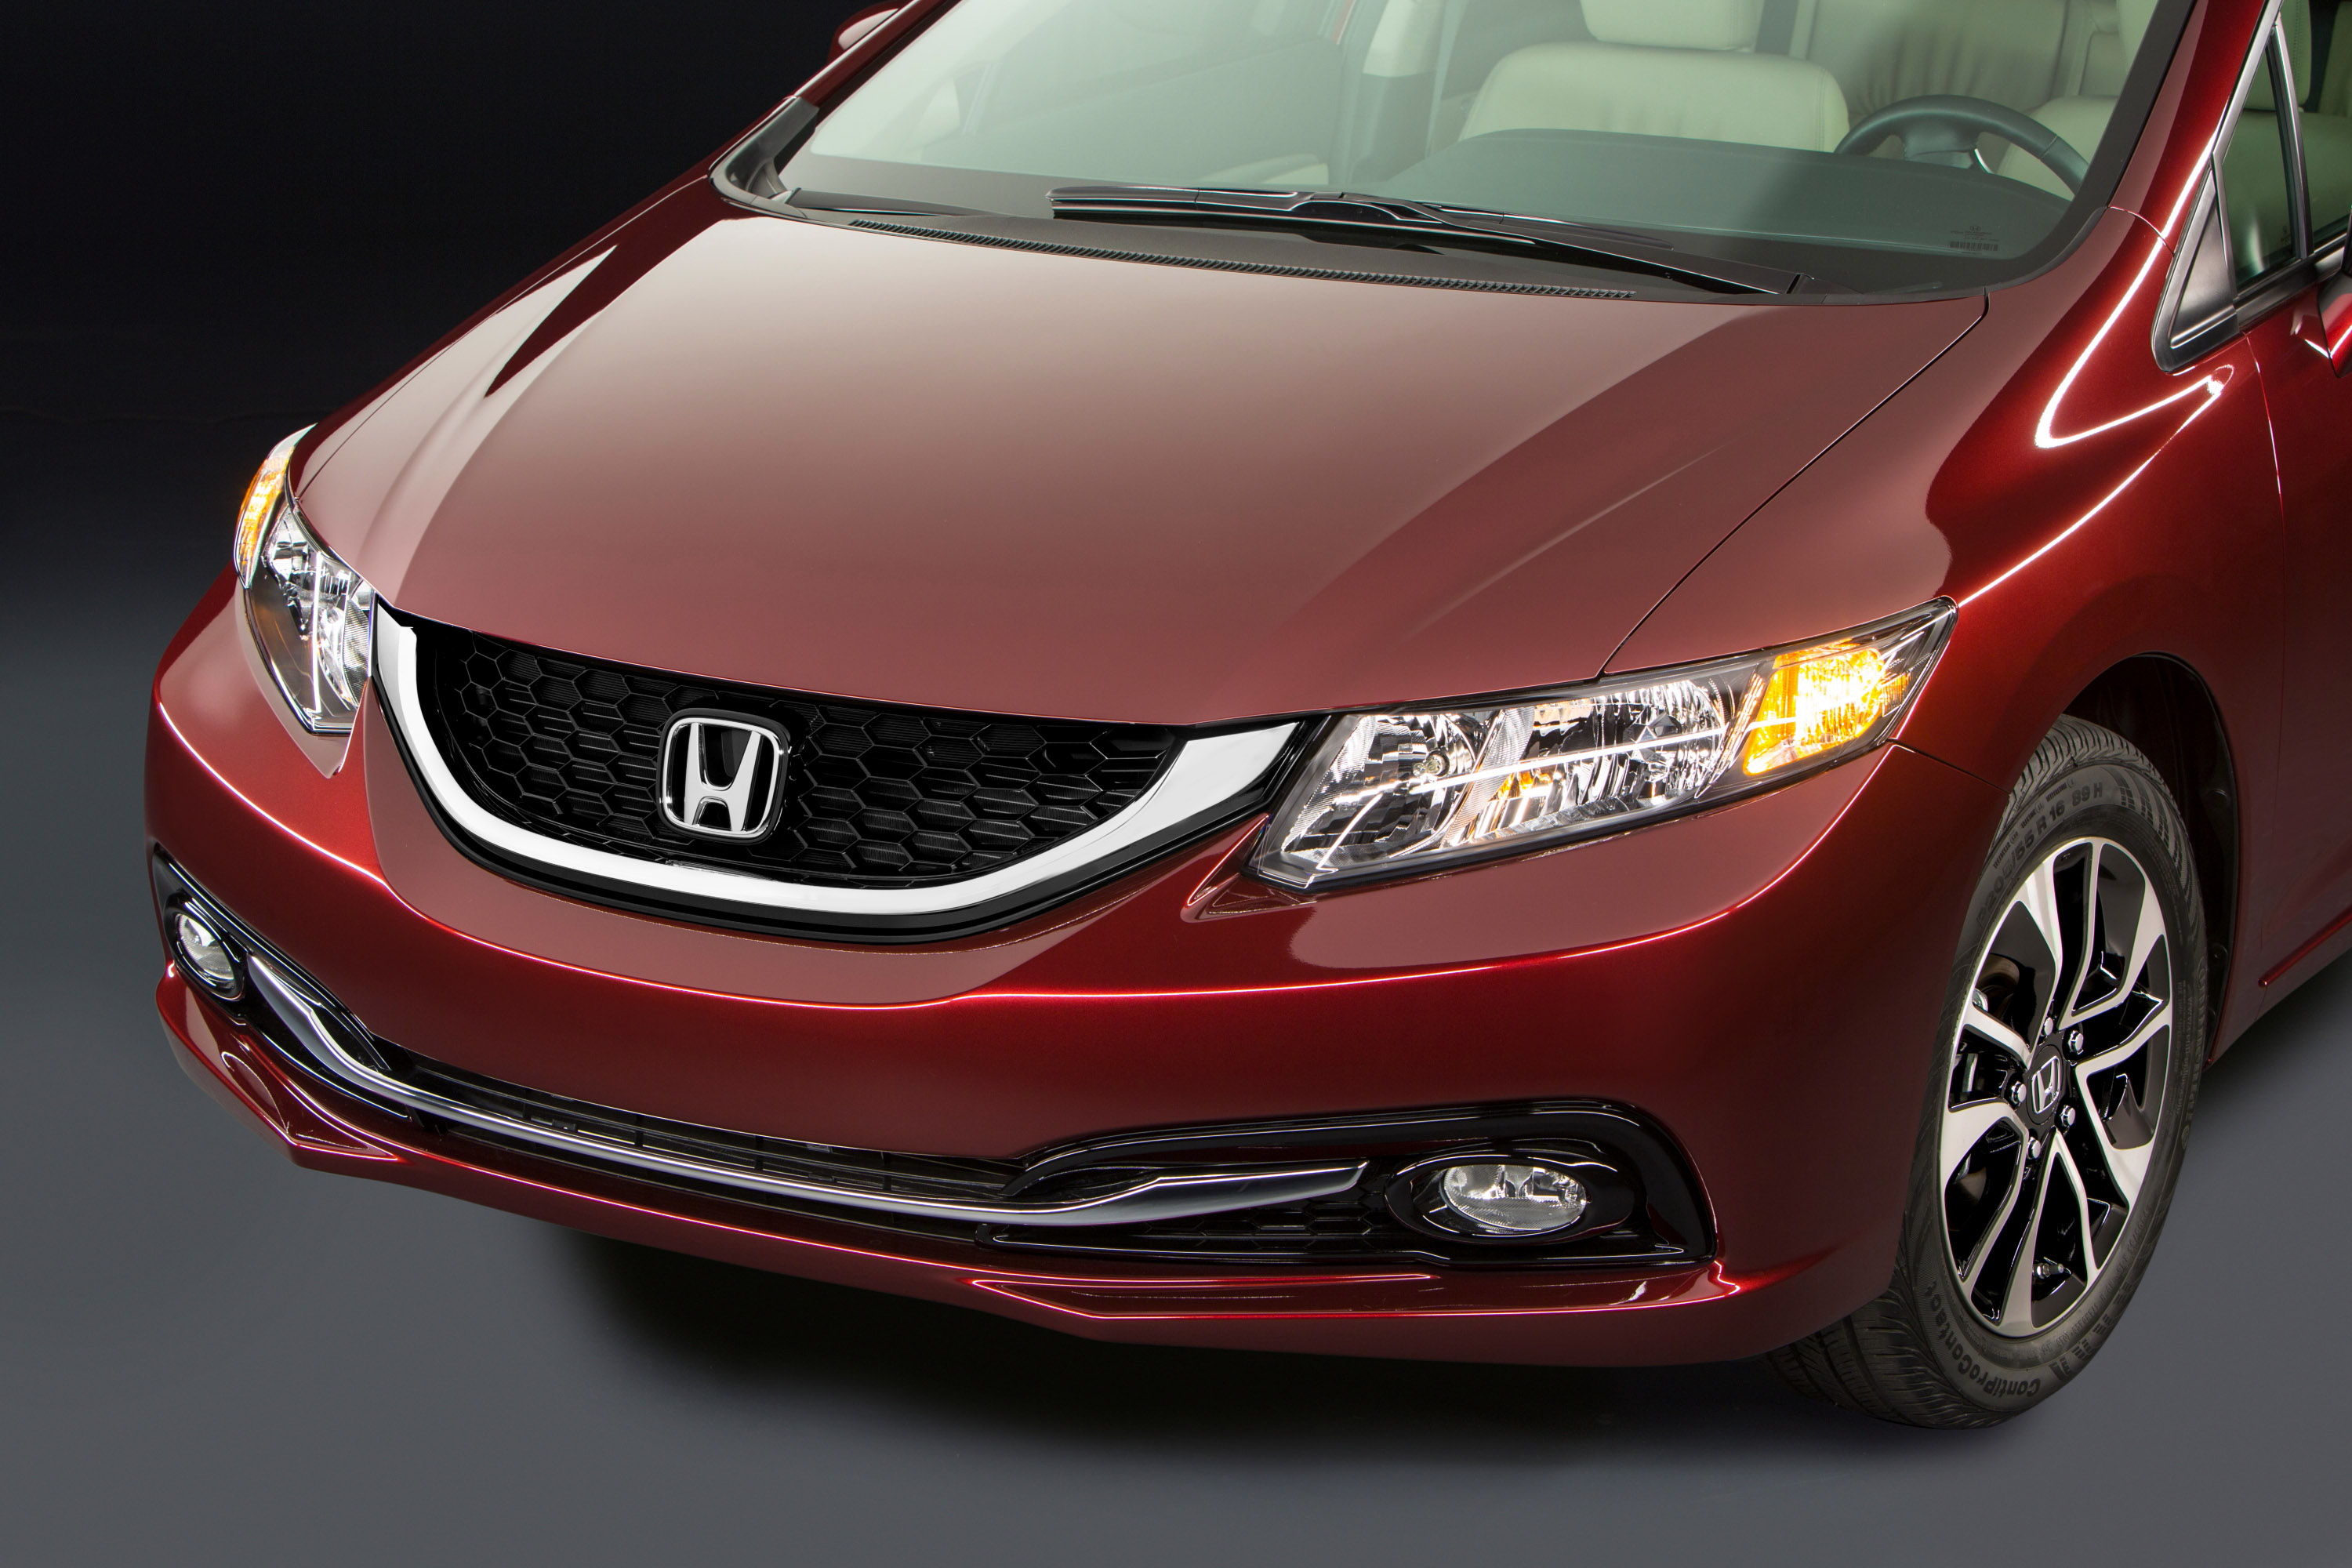 2013 Honda Civic Sedan HD Pictures